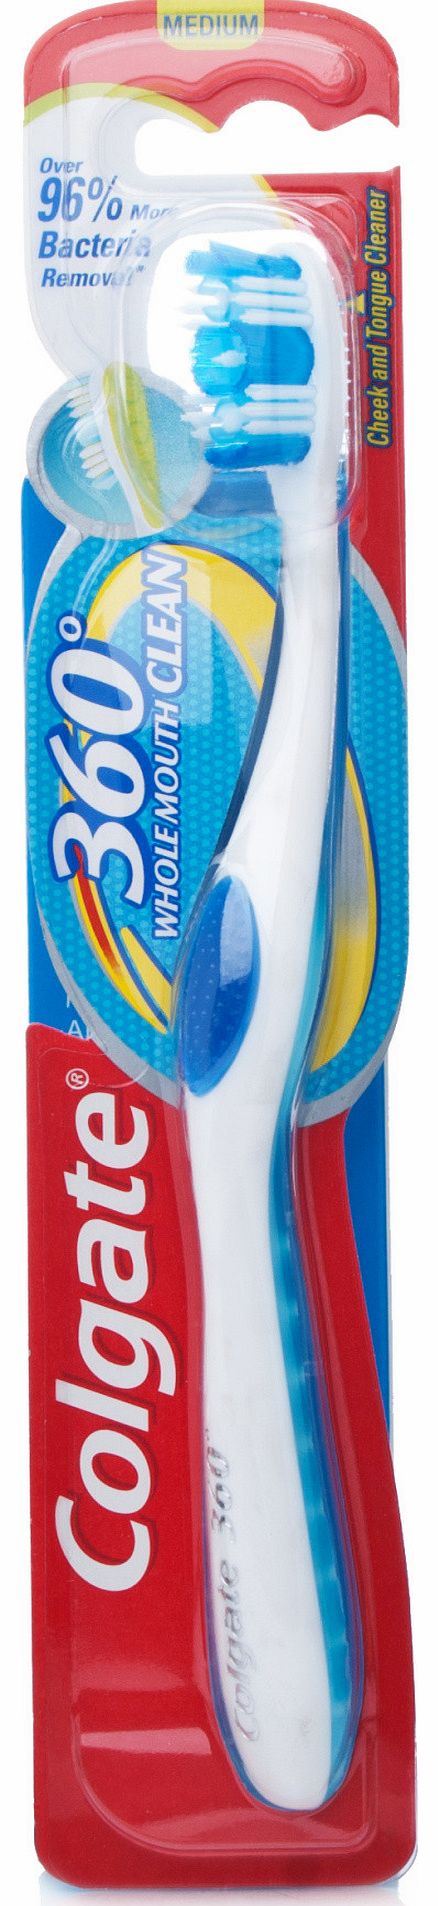 Colgate 360 Deep Clean Toothbrush Medium